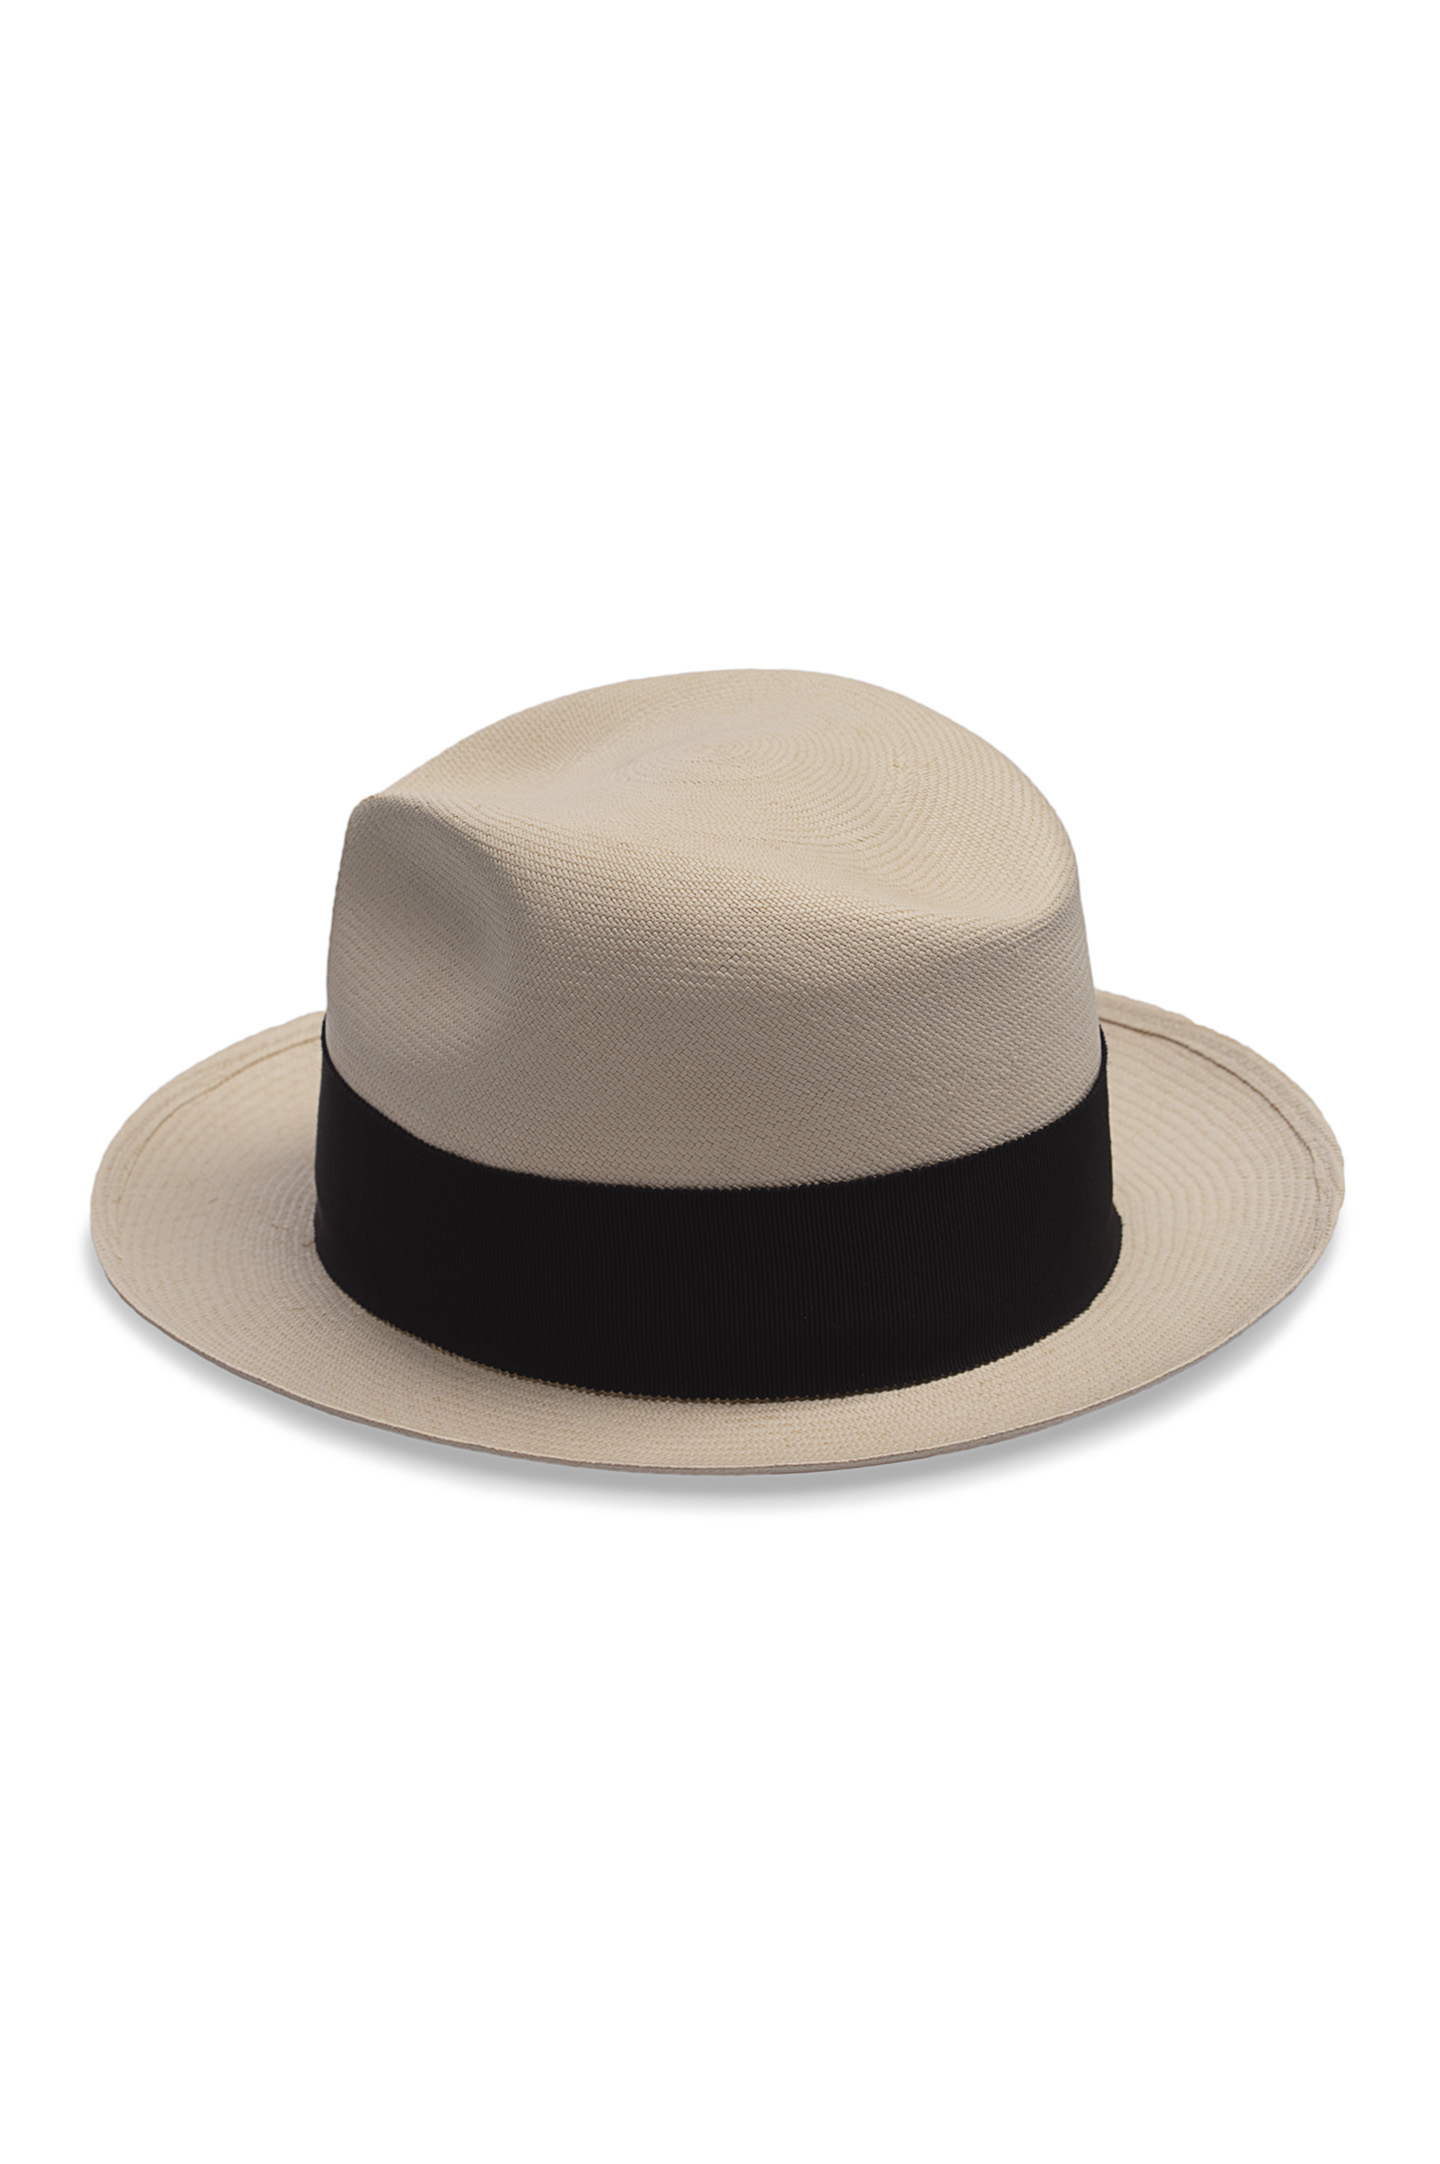 Шляпа PRADA 1HC045, цвет: Молочный, Женский